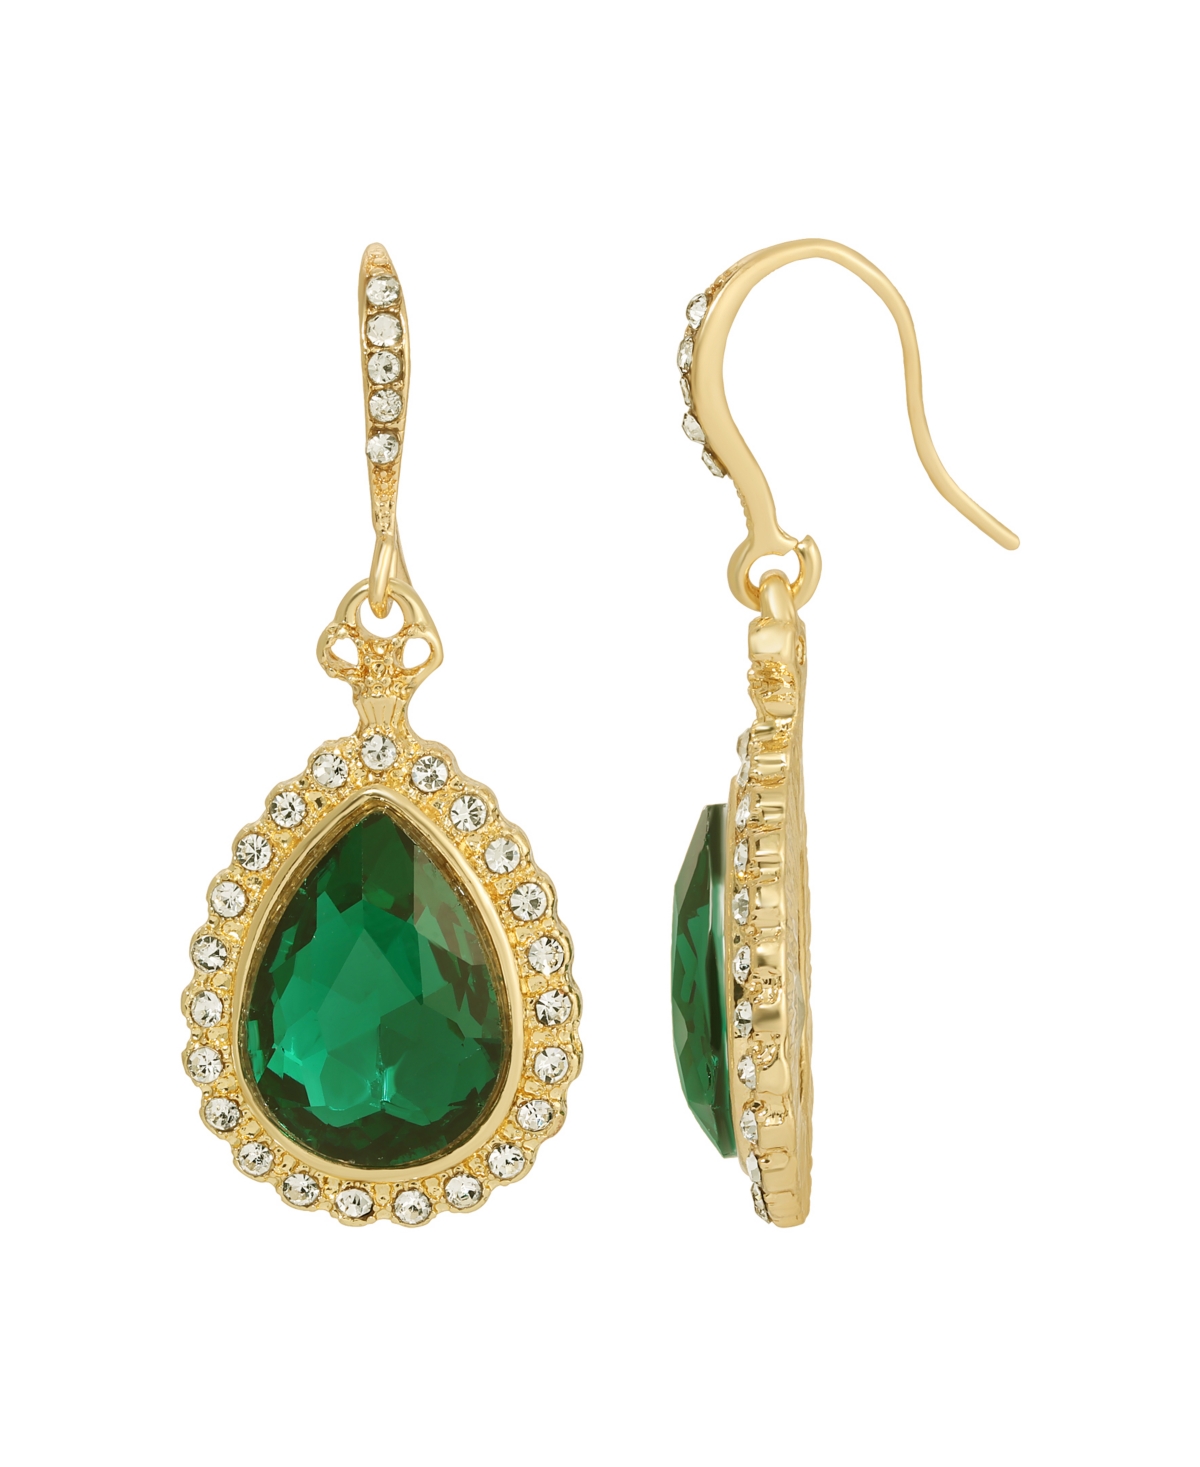 Gold-Tone Teardrop Earrings - Green